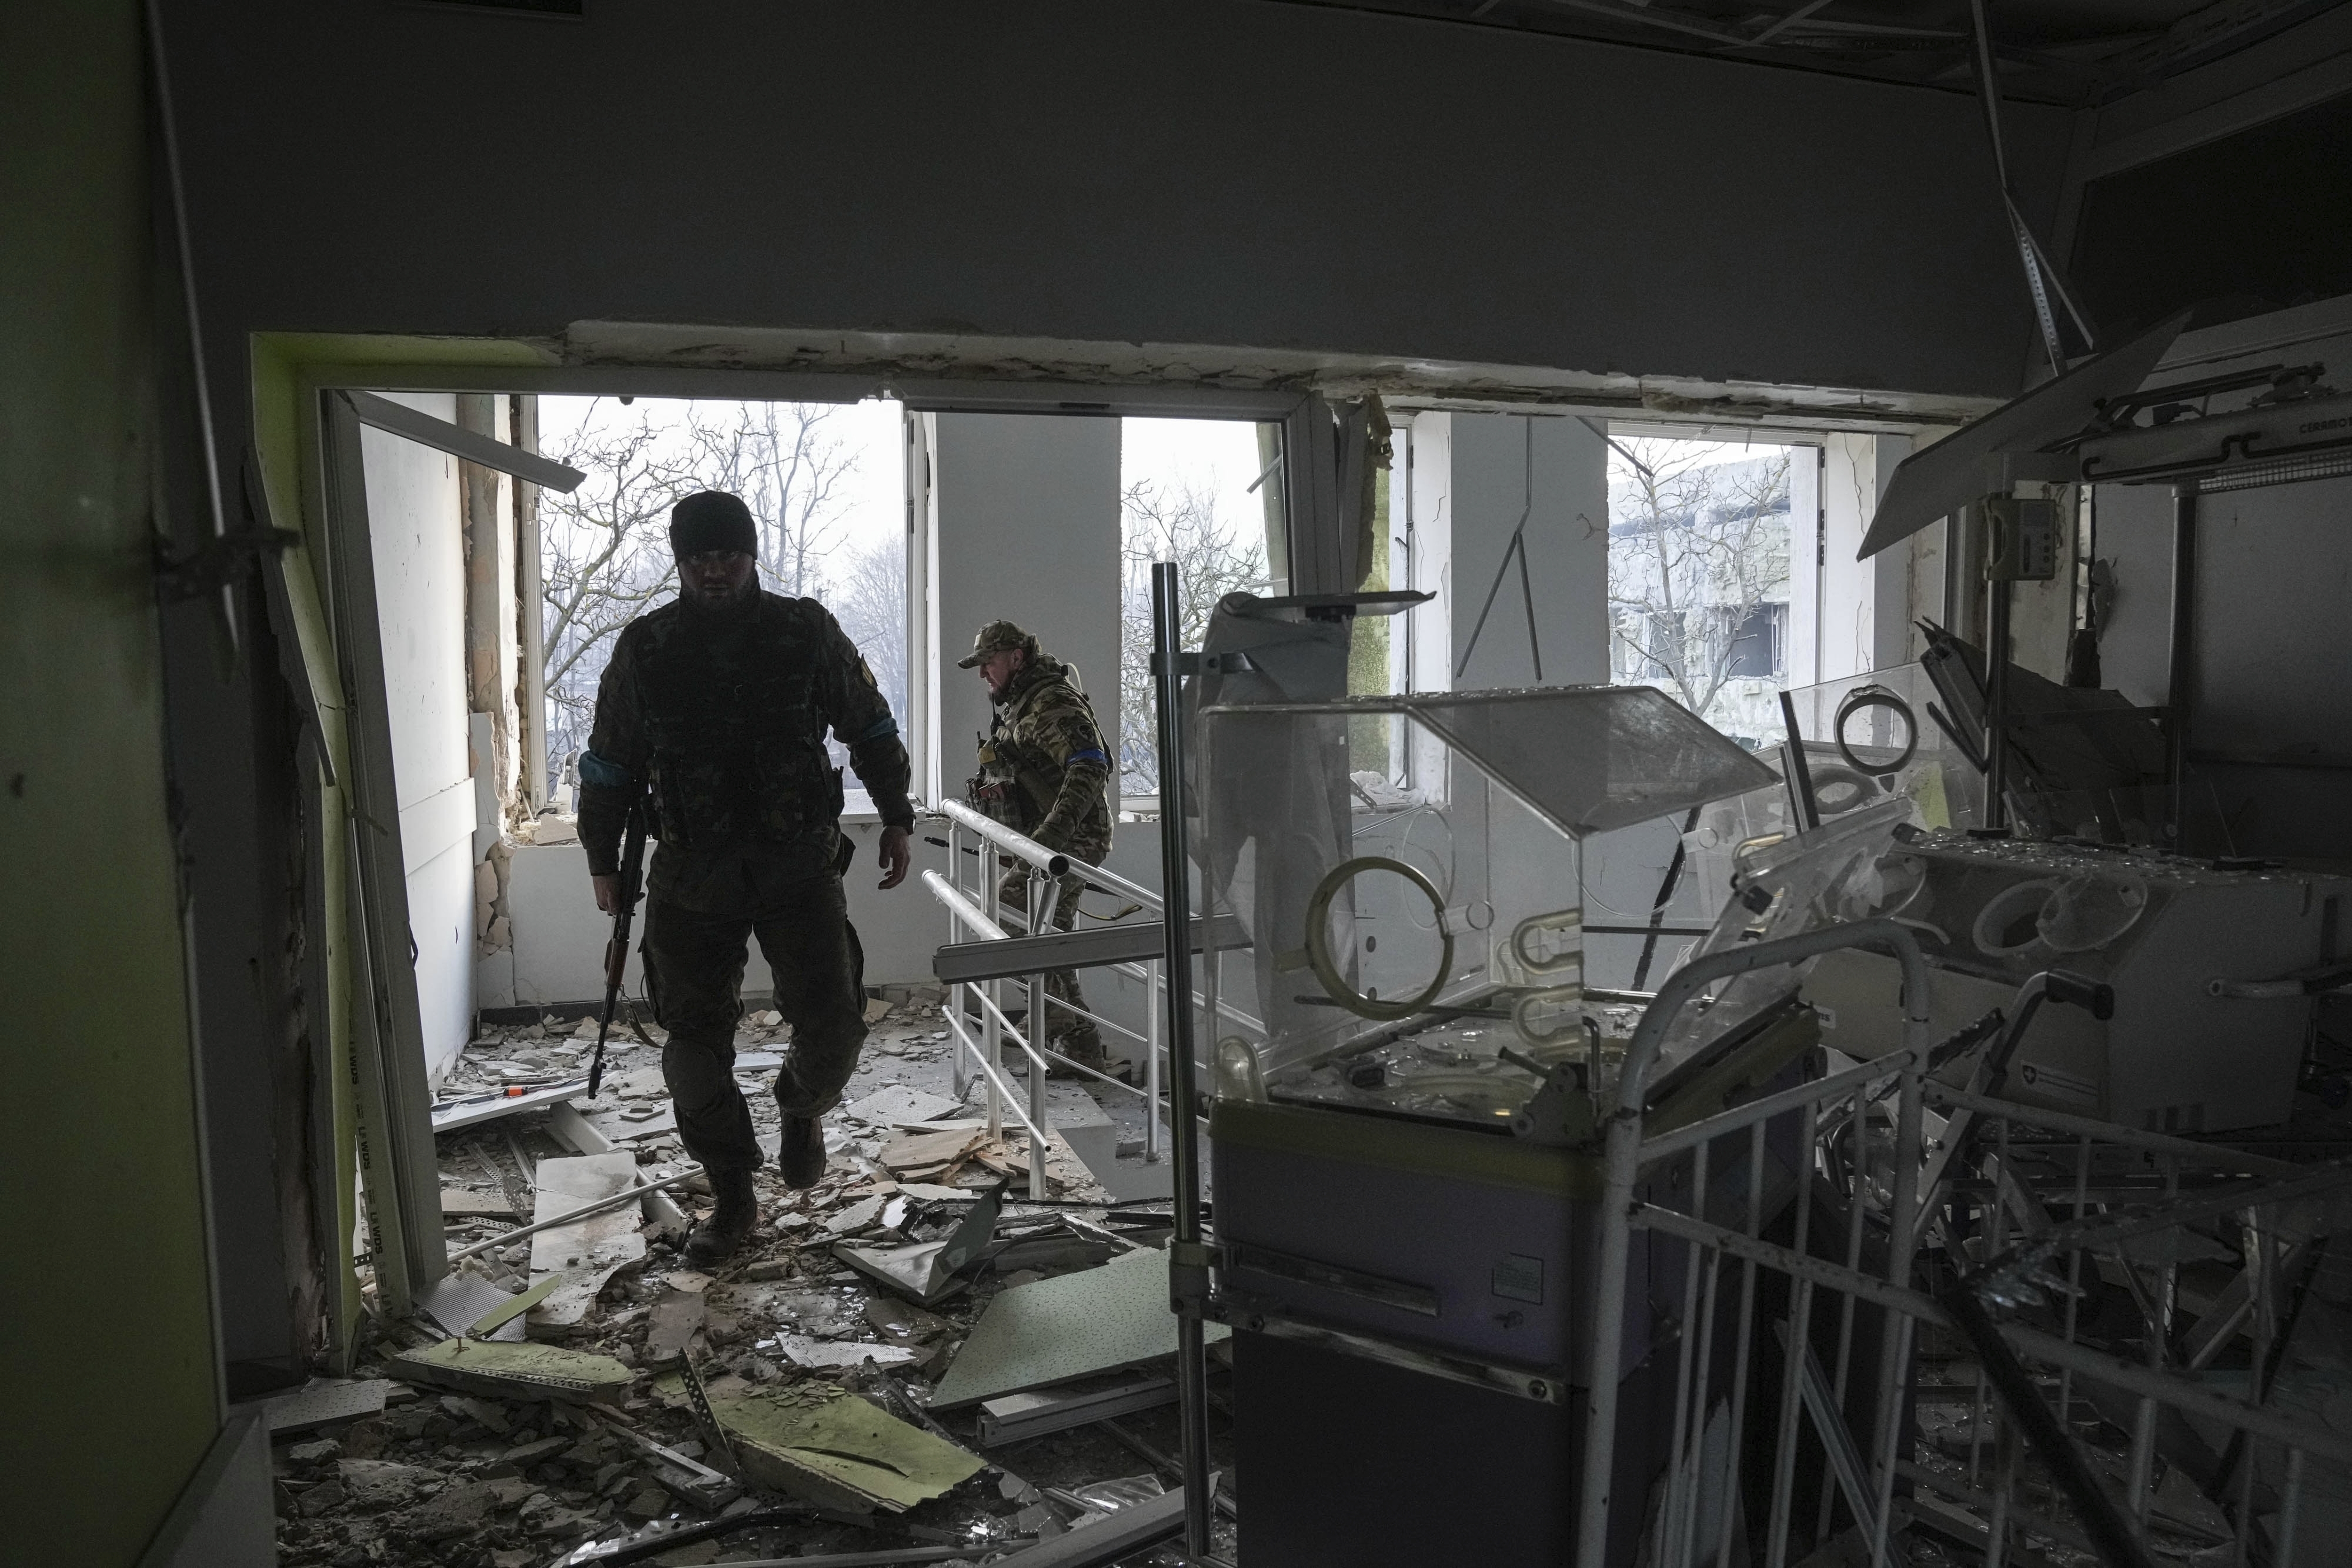 La Organización Mundial de la Salud ha registrado al menos 64 ataques contra estas instalaciones, de los cuales 24 fueron dañados o destruidos
(AP Photo/Evgeniy Maloletka, File)